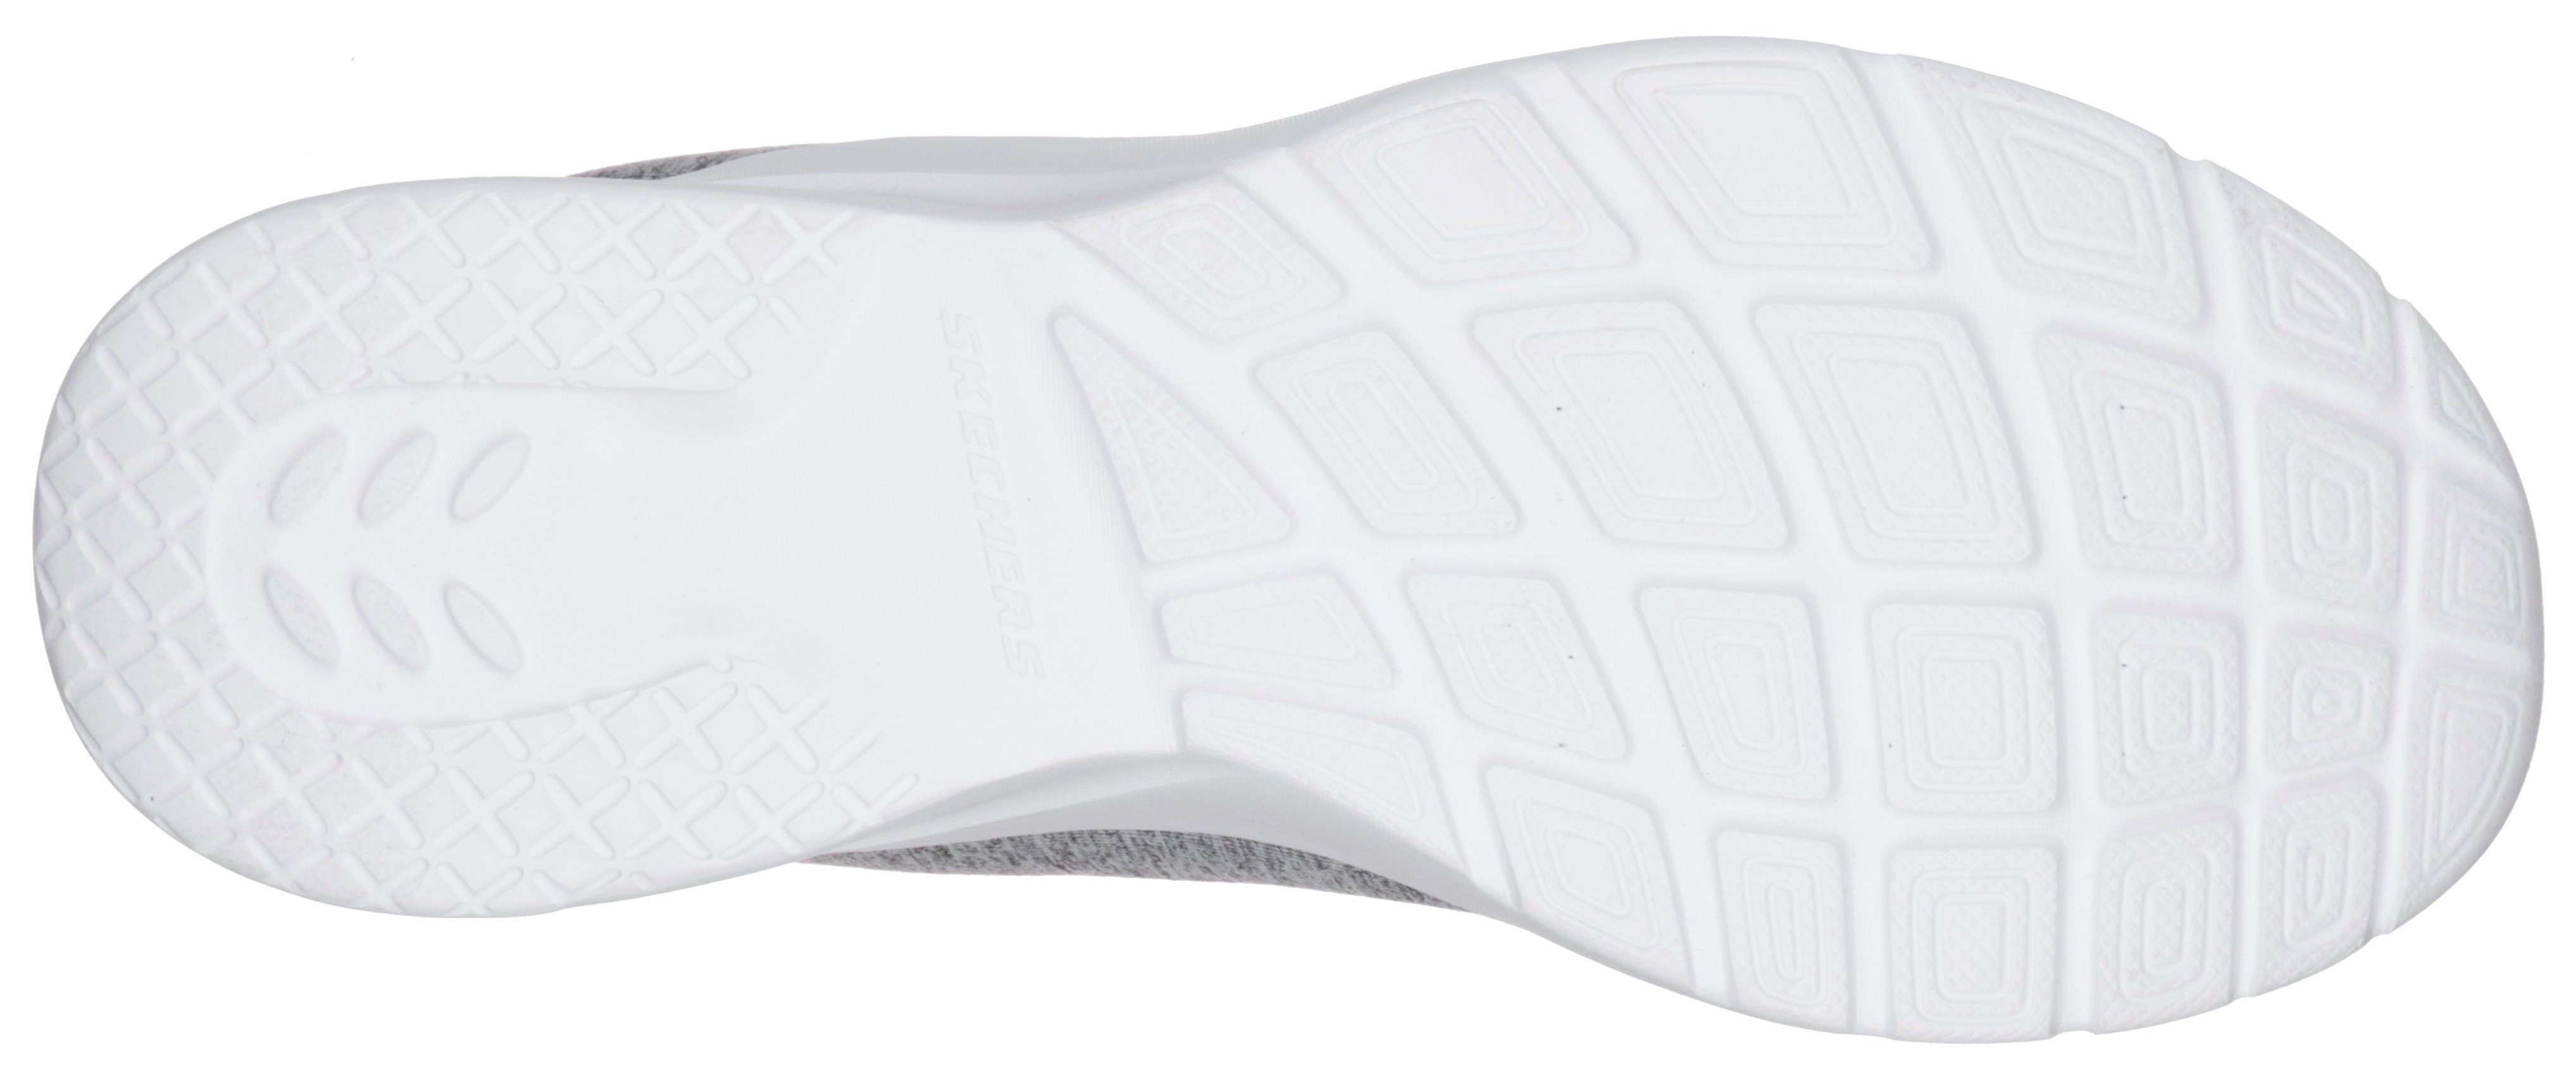 Slip-On für grau-mint 2.0-IN Maschinenwäsche Skechers FLASH DYNAMIGHT A Sneaker geeignet